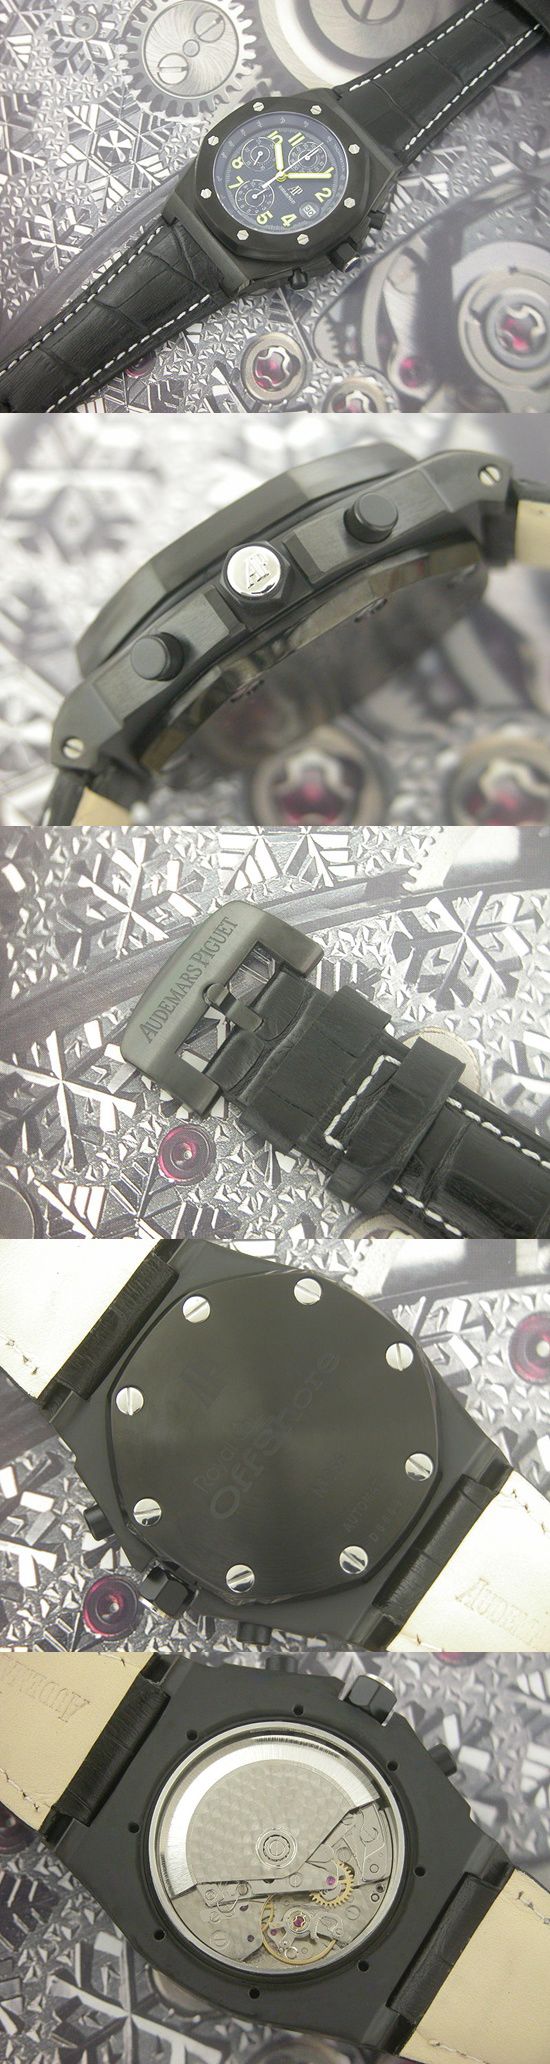 おしゃれなブランド時計がオーデマピゲ-ロイヤルオークオフショア-AUDEMARS PIGUET-25770SN.O.0001KE.01-男性用を提供します.